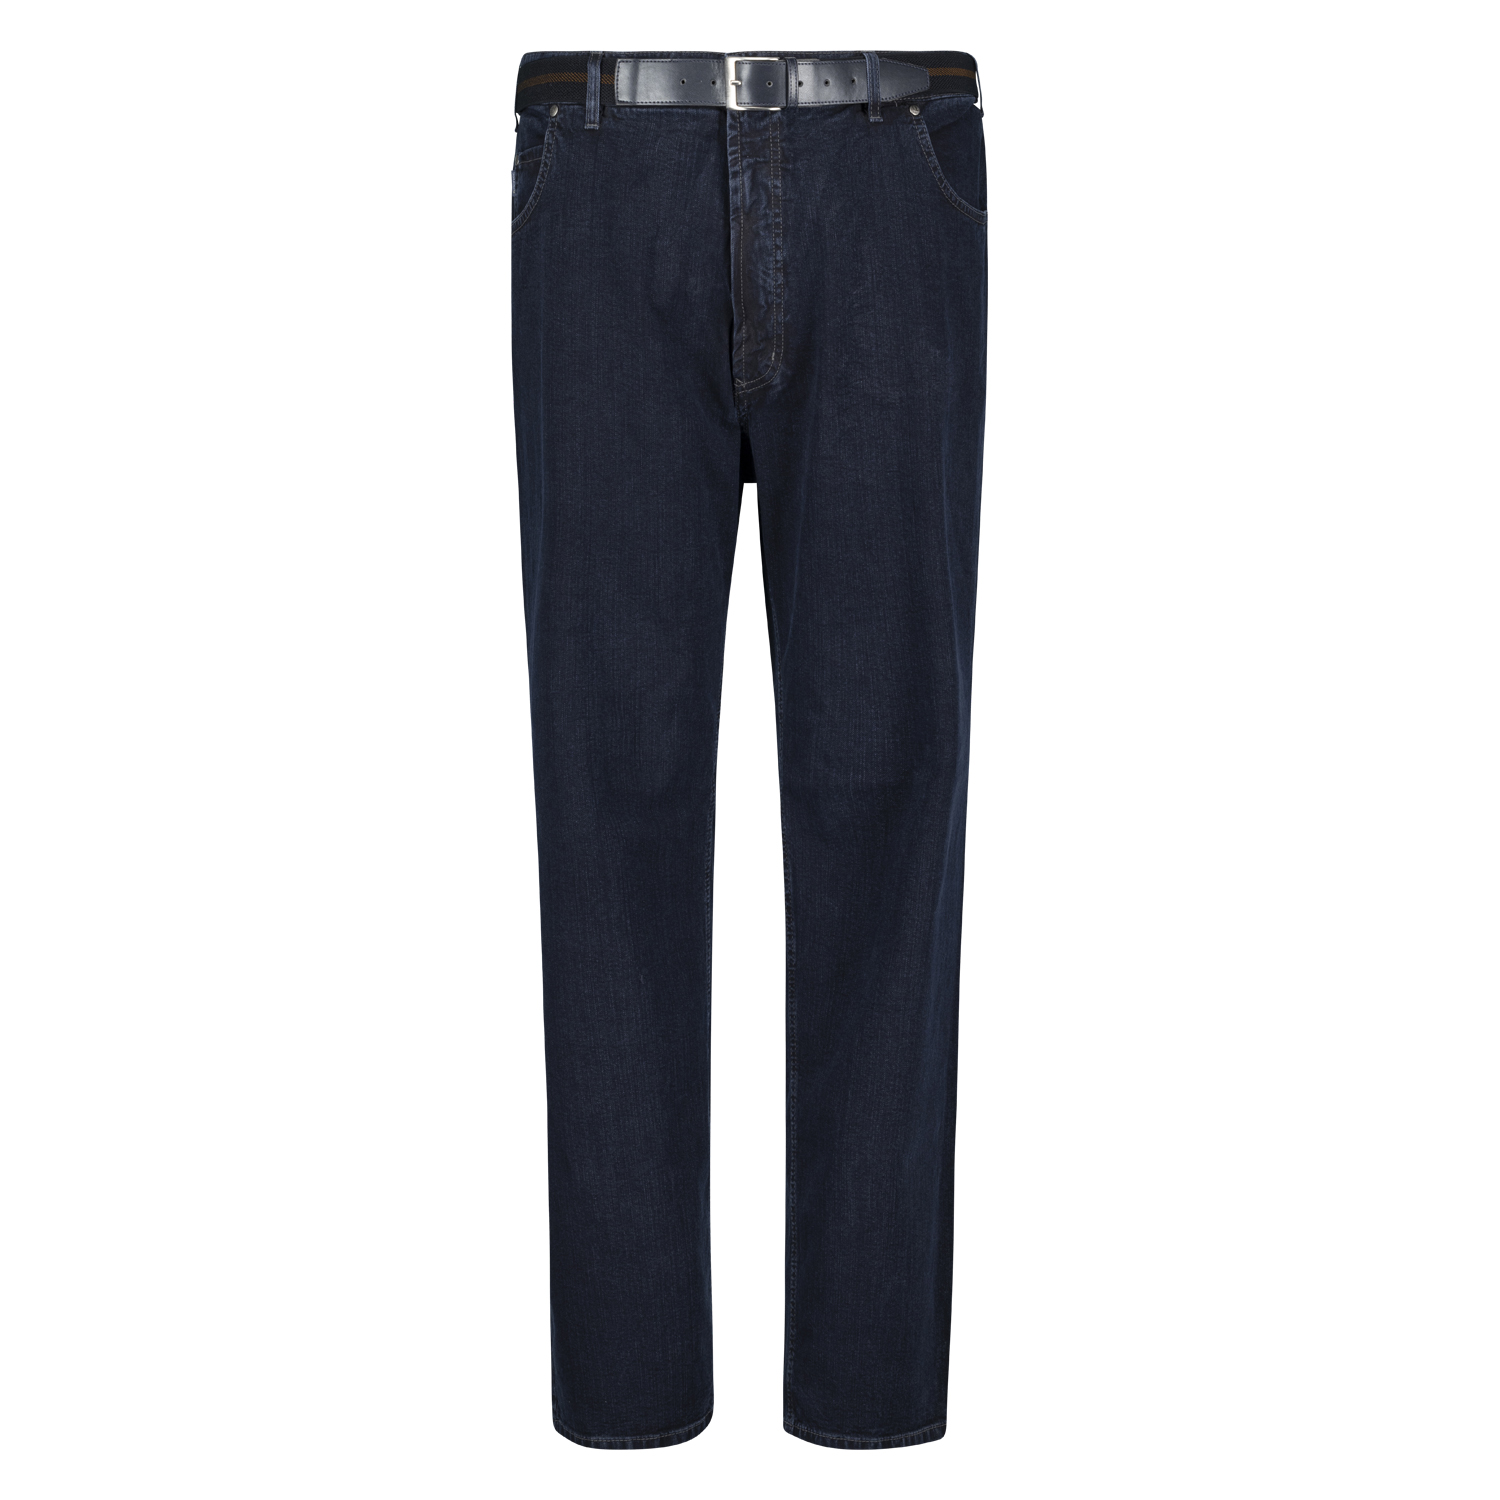 Herren 5-Pocket Jeans lang Modell "Peter" mit Stretch von Pioneer Bauchgrößen 59 - 85